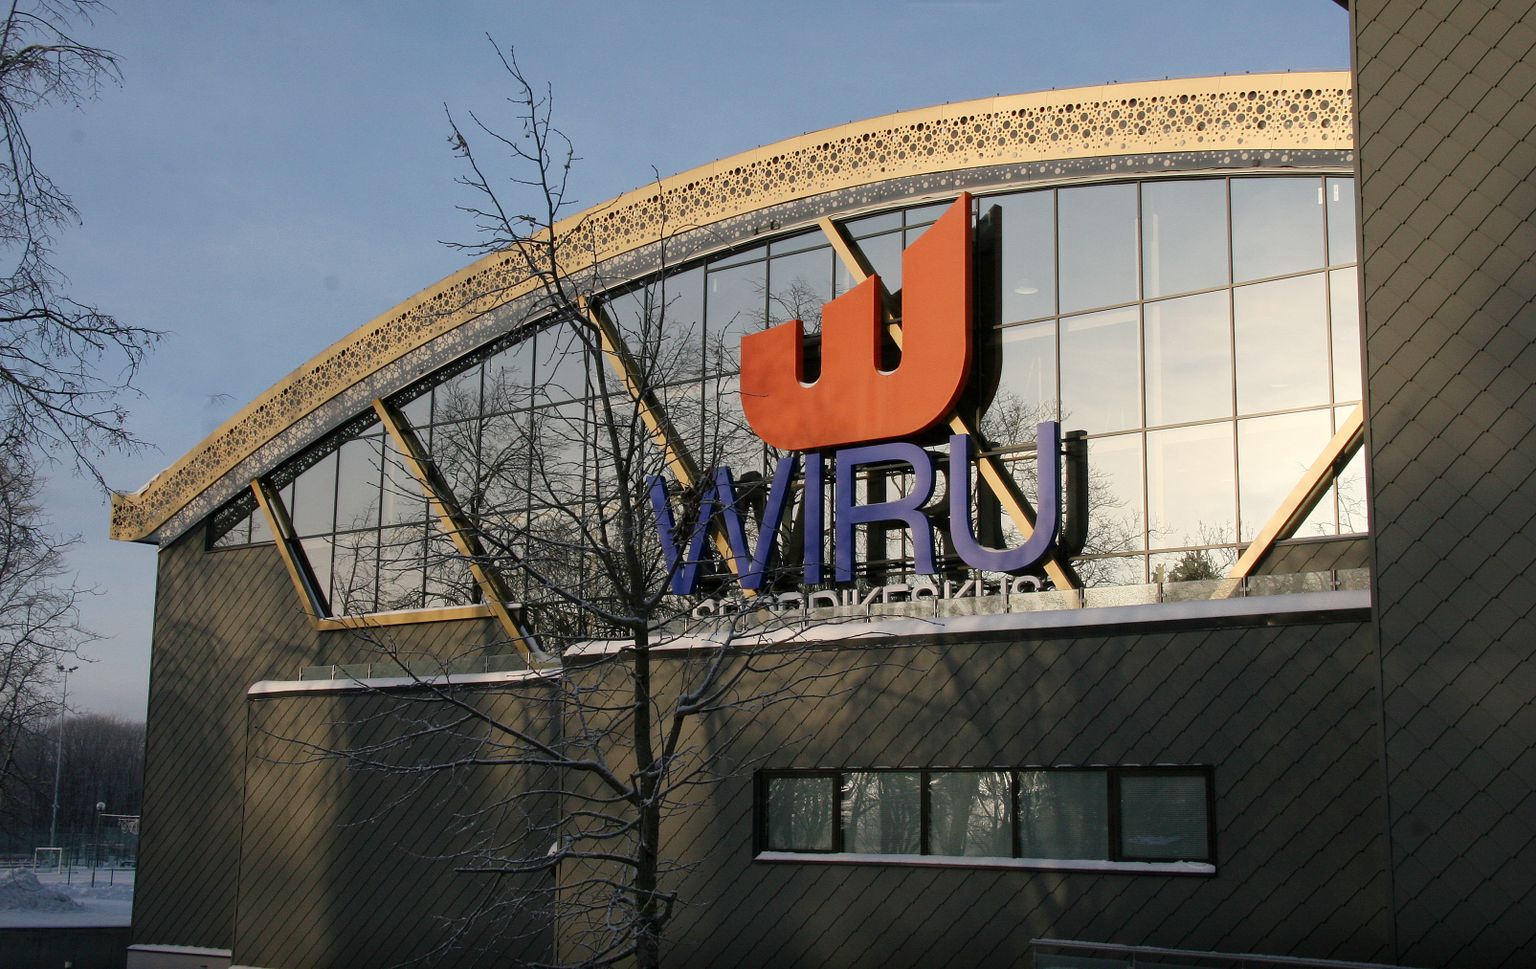 Спортивно-оздоровительный центр "Wiru" - самый новый объект из четырех, входящих в состав Кохтла-Ярвеского спортцентра.